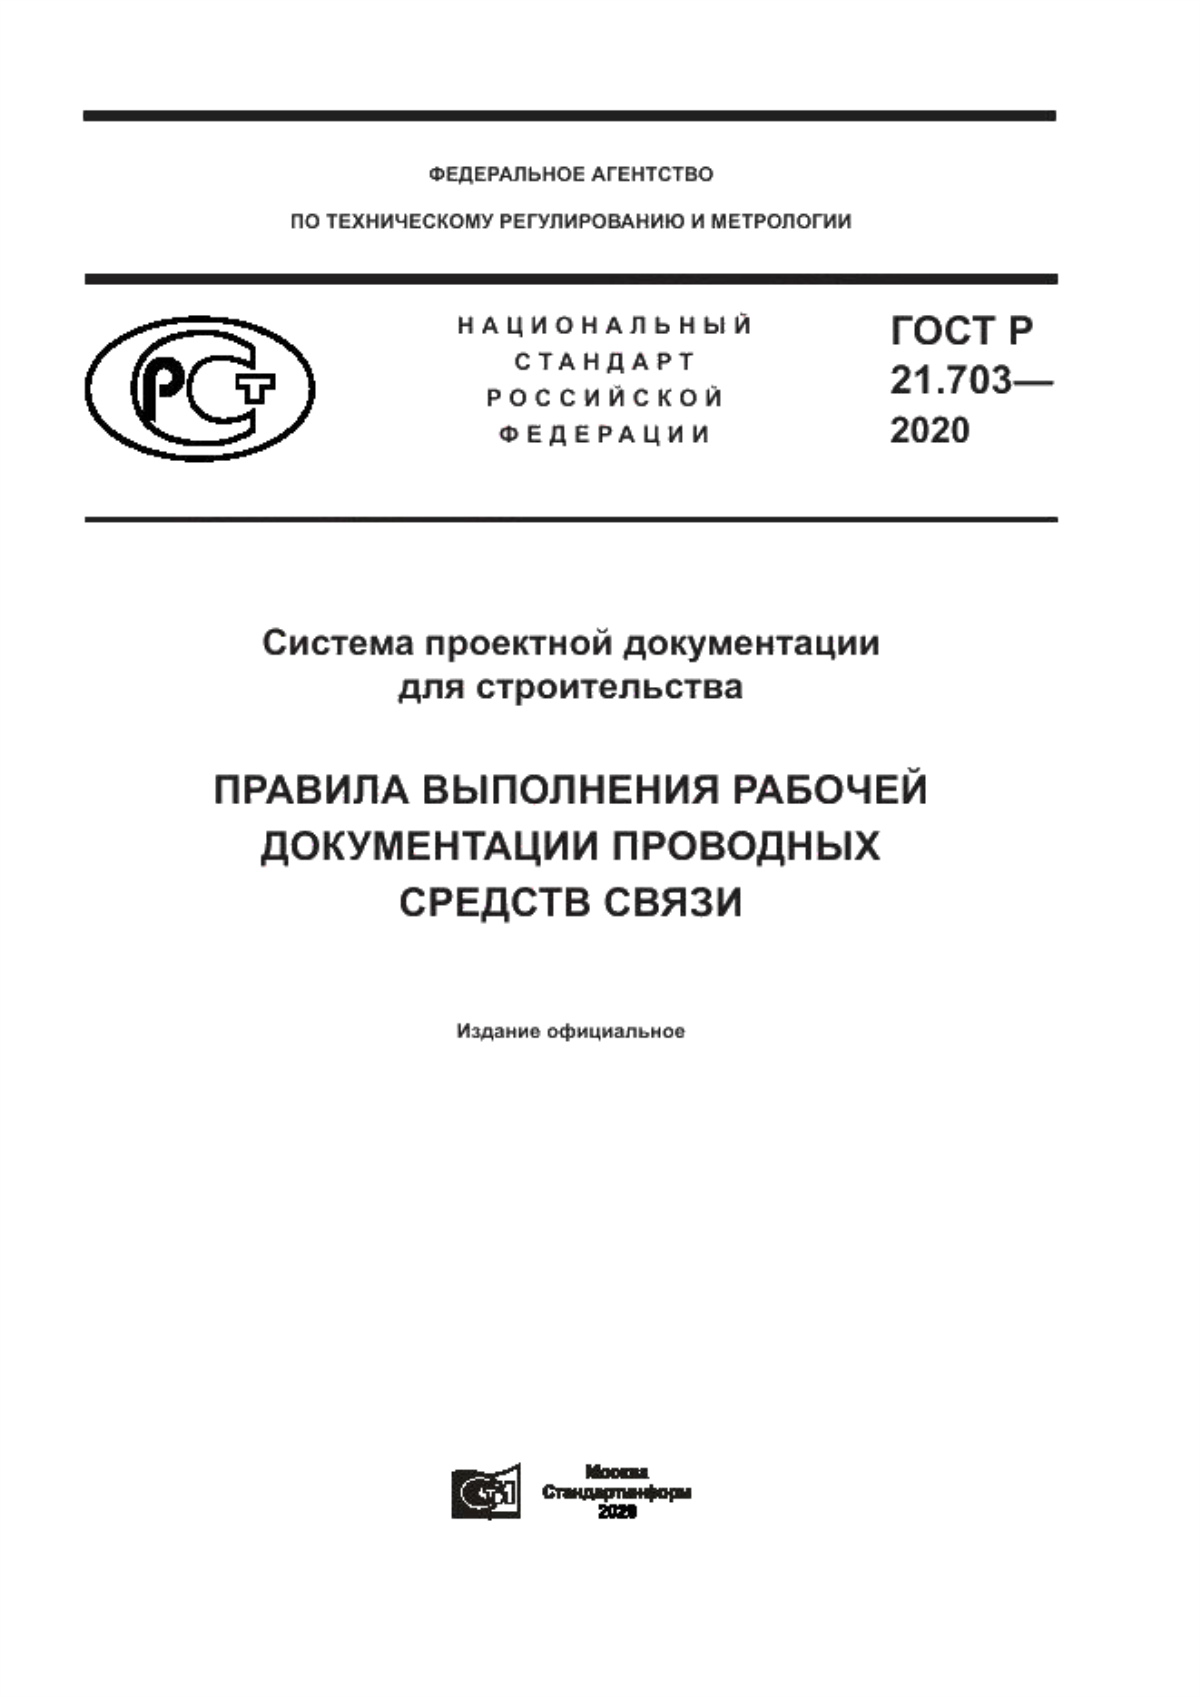 ГОСТ Р 21.703-2020 Система проектной документации для строительства. Правила выполнения рабочей документации проводных средств связи